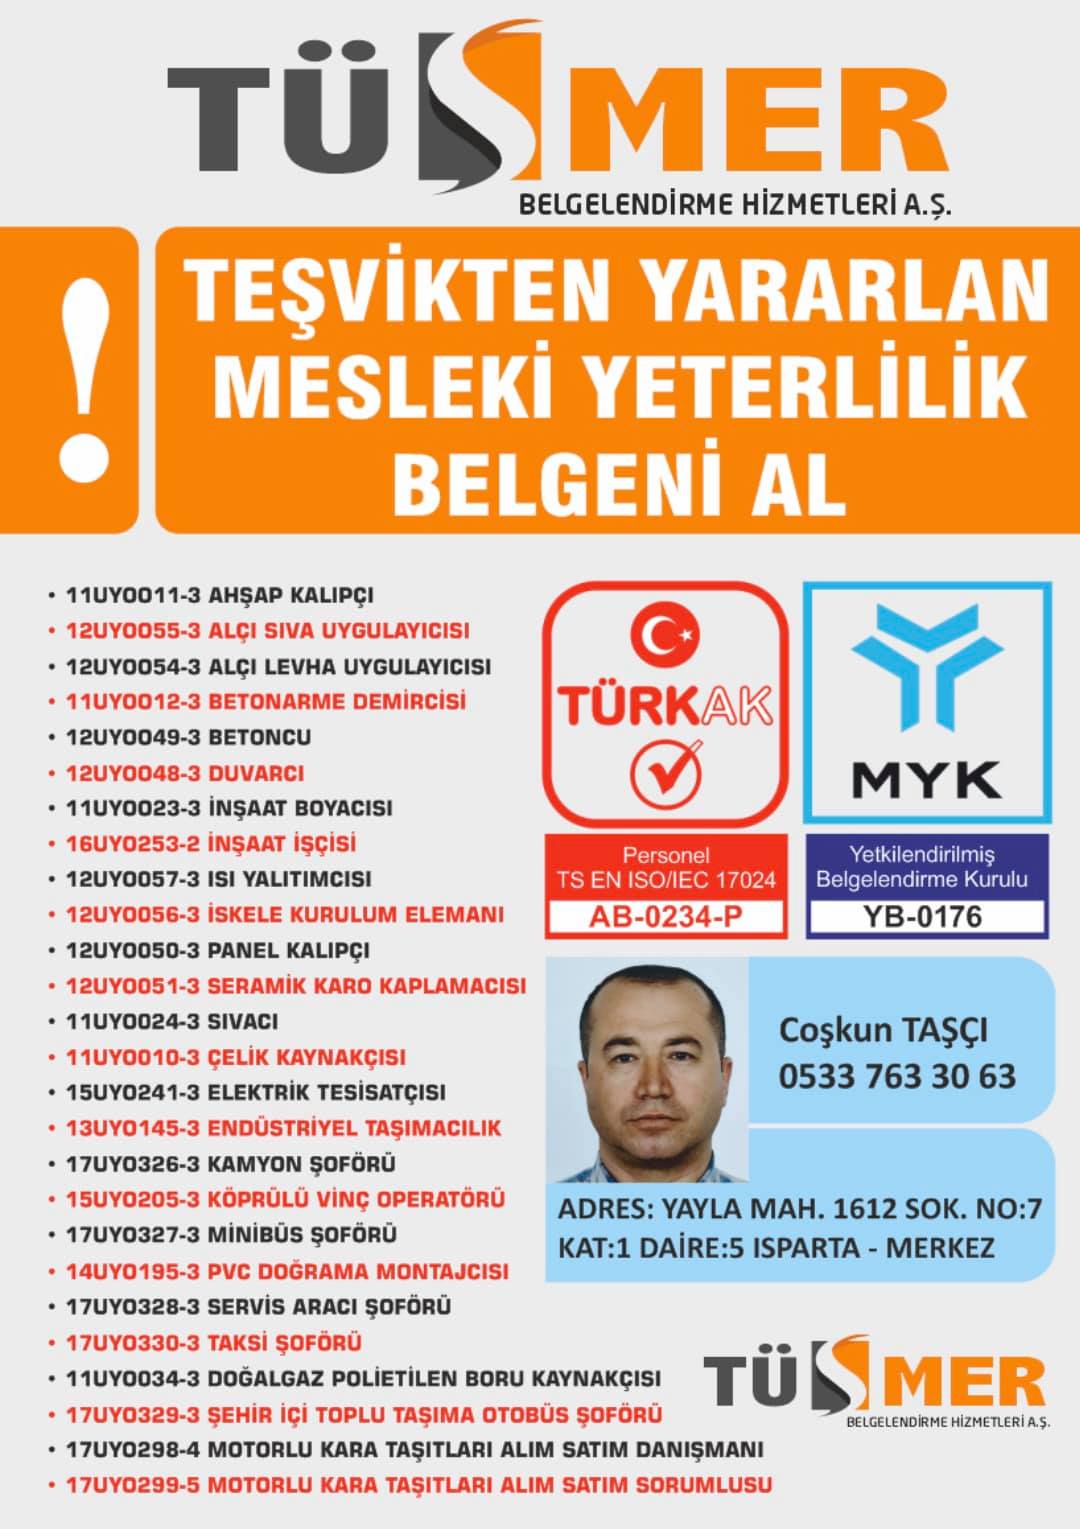 MYK MESLEKİ YETERLİLİK BELGESİ Ömeravni Beyoğlu İstanbul